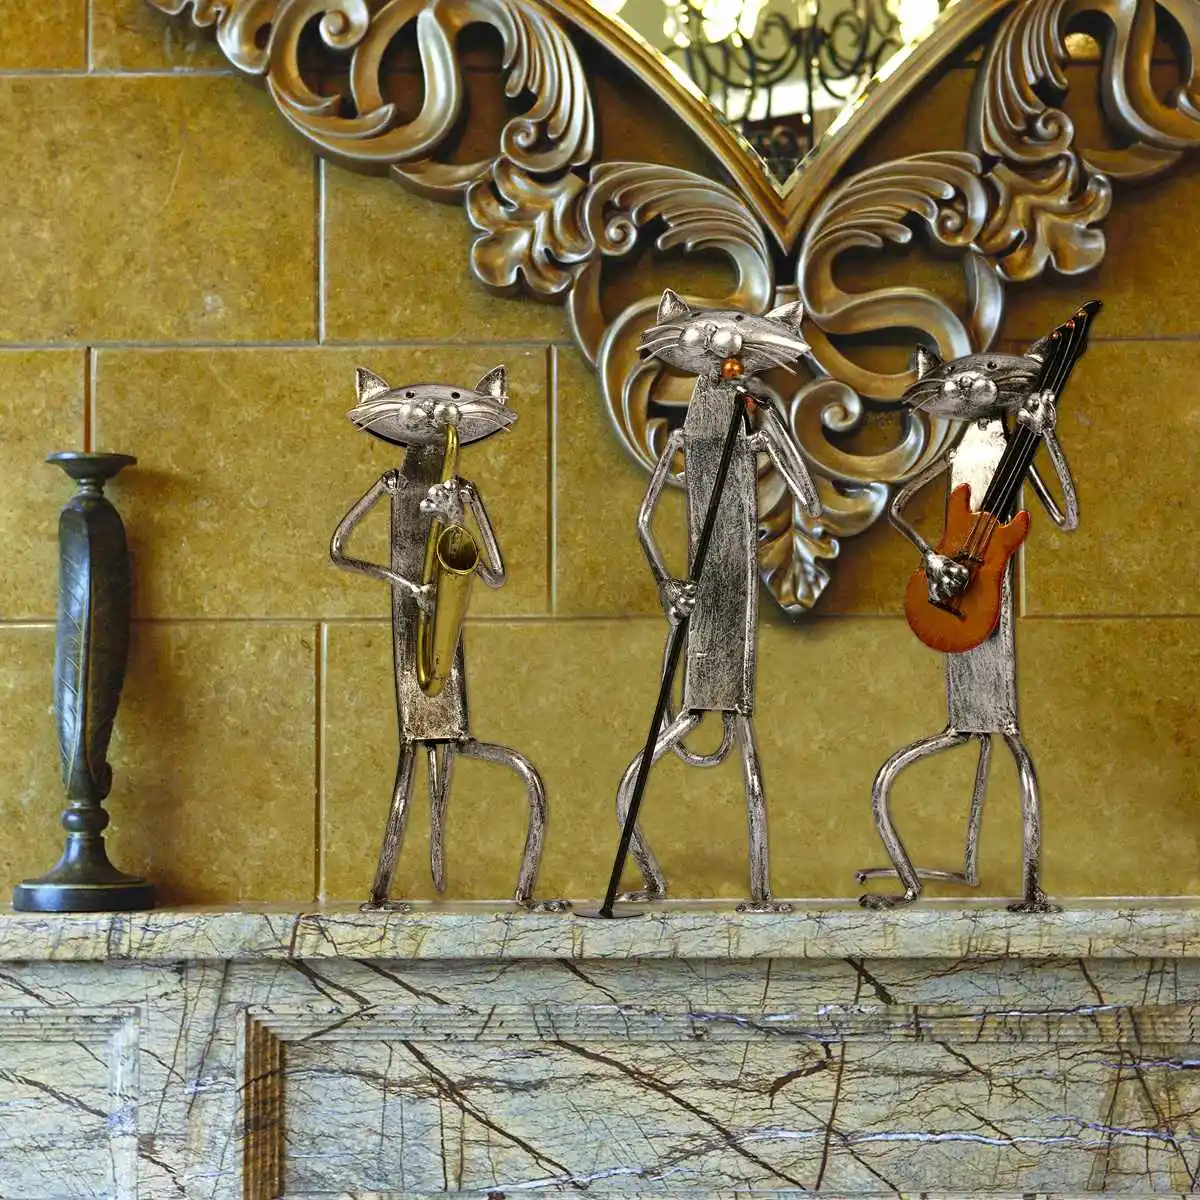 Металлическая скульптура tooarts поделки для декорирования интерьера игры саксофон кошка предметы домашней мебели ремесла